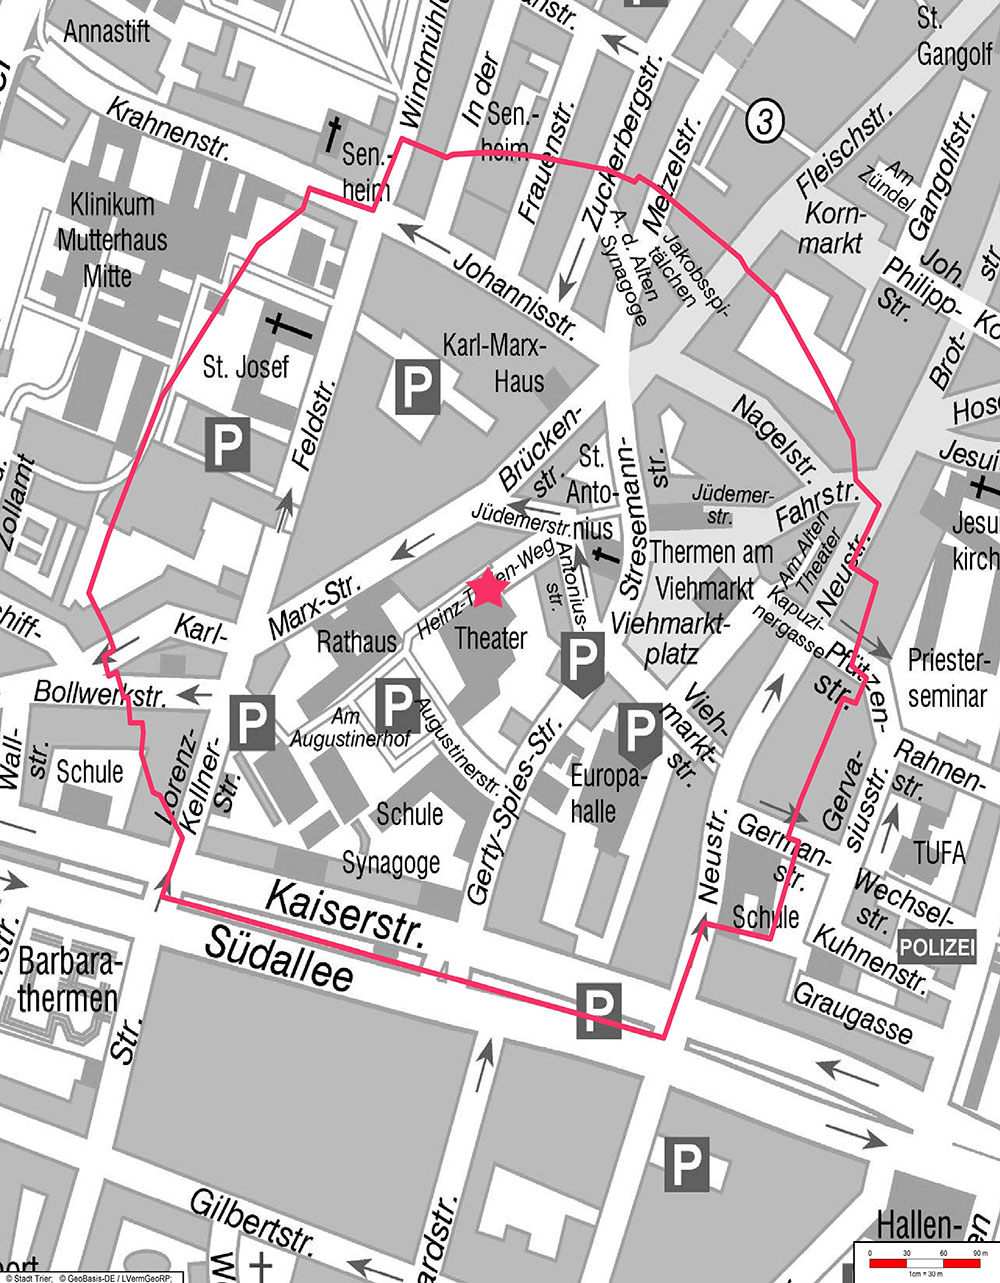 Die Karte (Quelle: Stadt Trier) zeigt das Räumungsgebiet